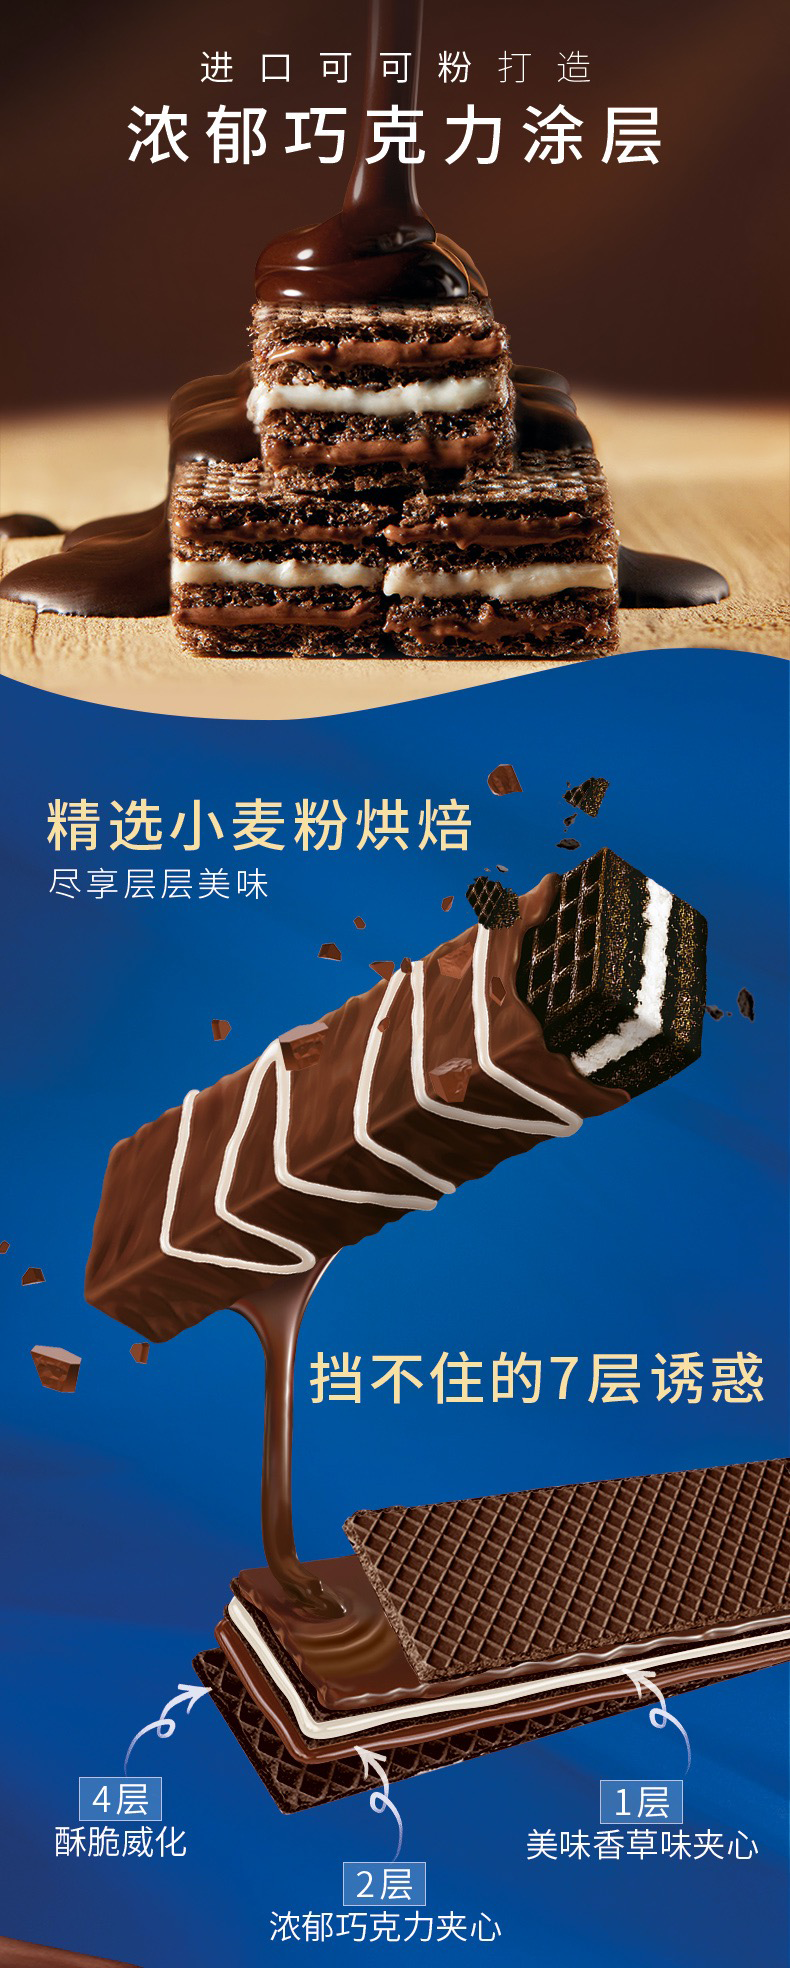 奥利奥巧克棒广告图片